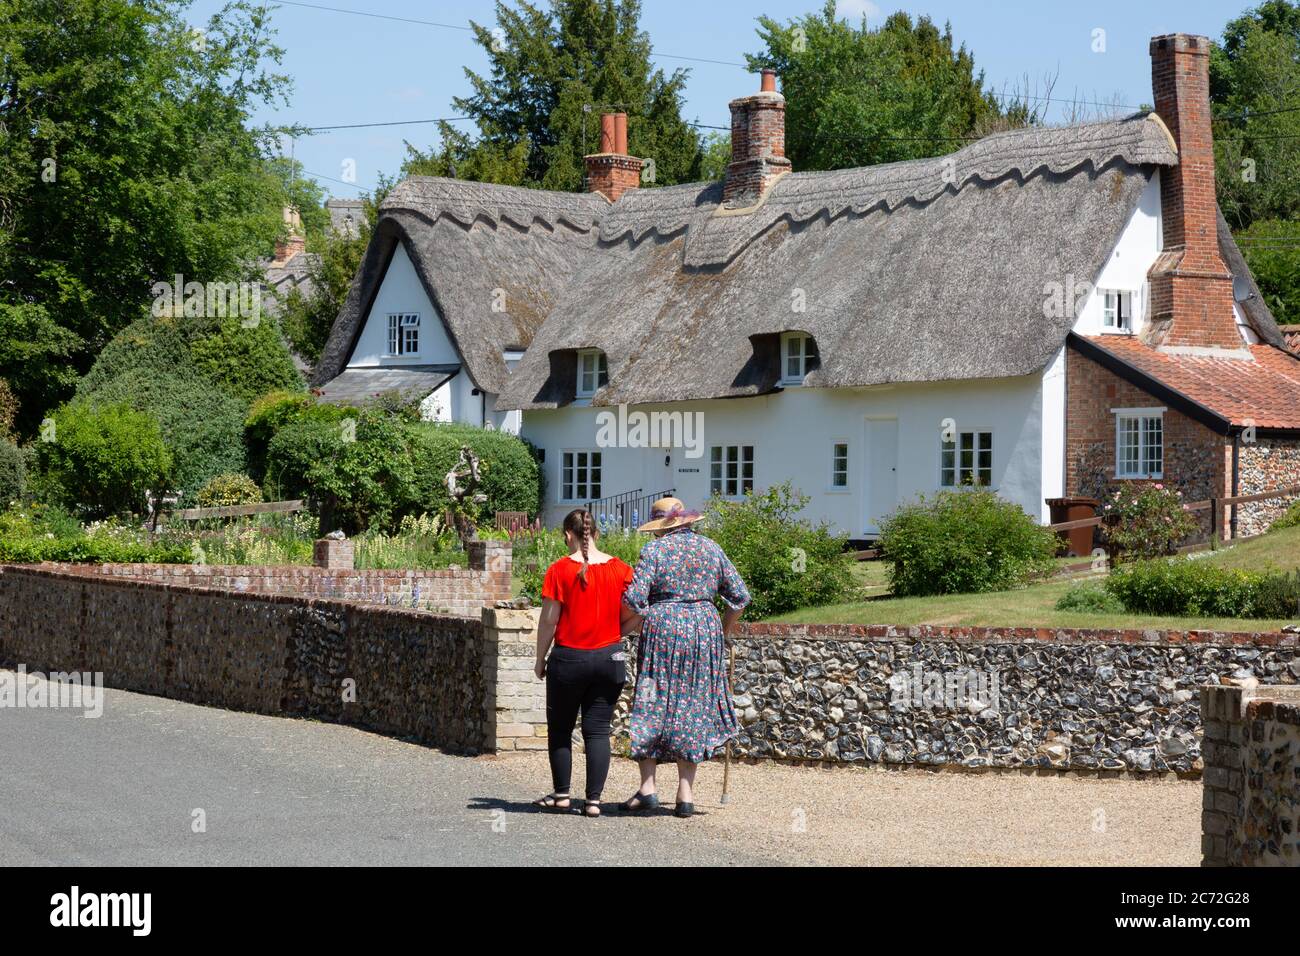 Englische Dorfstraßenszene im Sommer; zwei Frauen, die auf einer Straße vor einem traditionellen Reethaus, Dalham Village, Suffolk England, spazieren Stockfoto